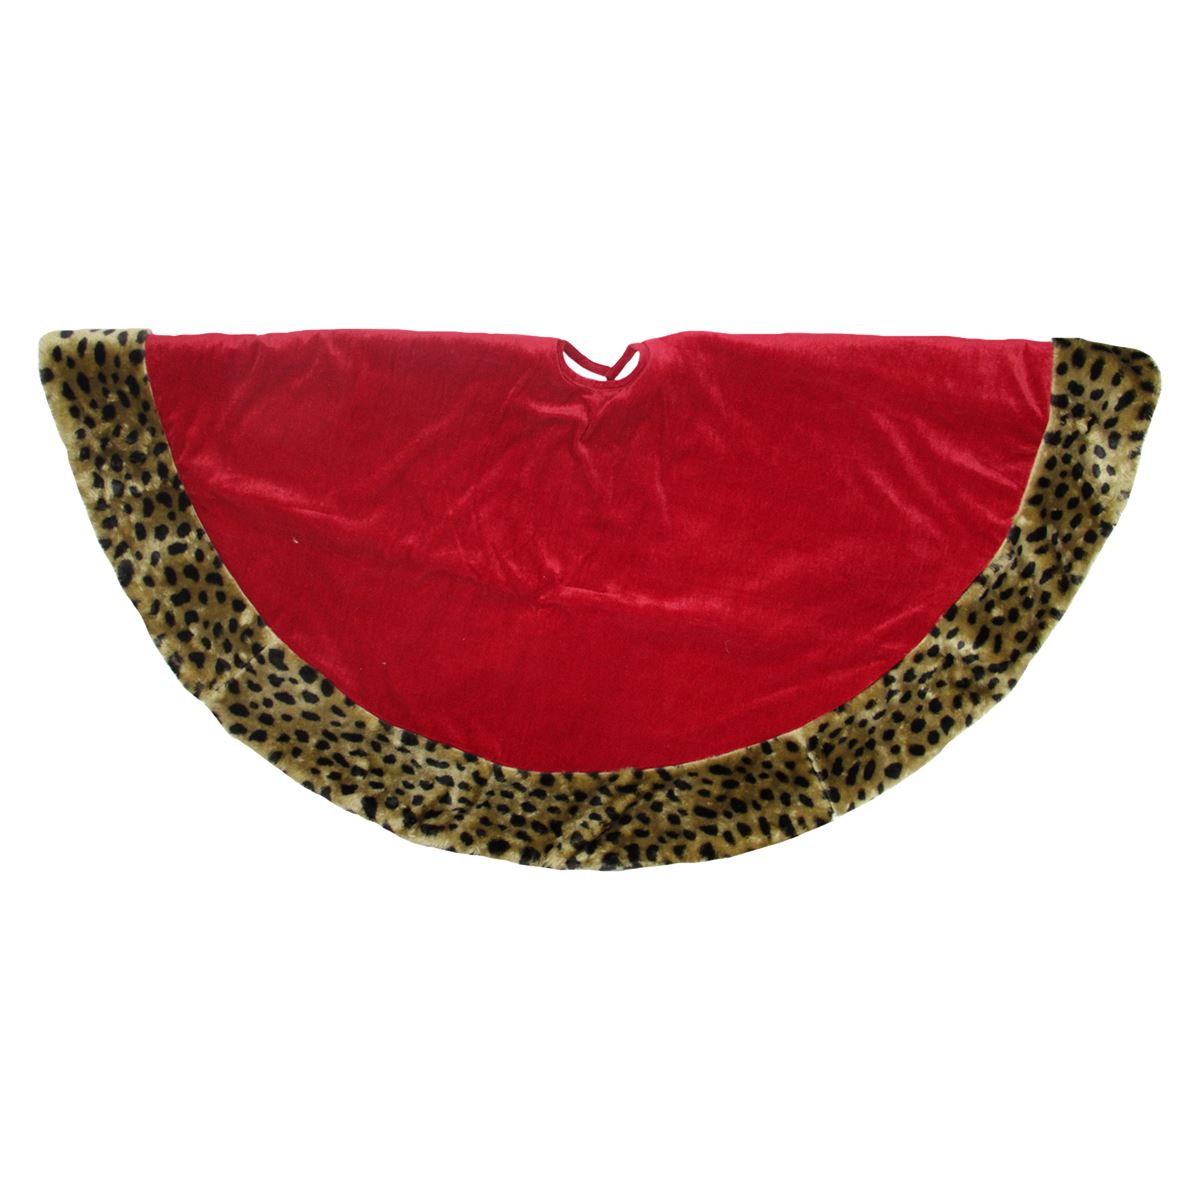 48in Cheetah Safari Christmas Tree Skirt - Red